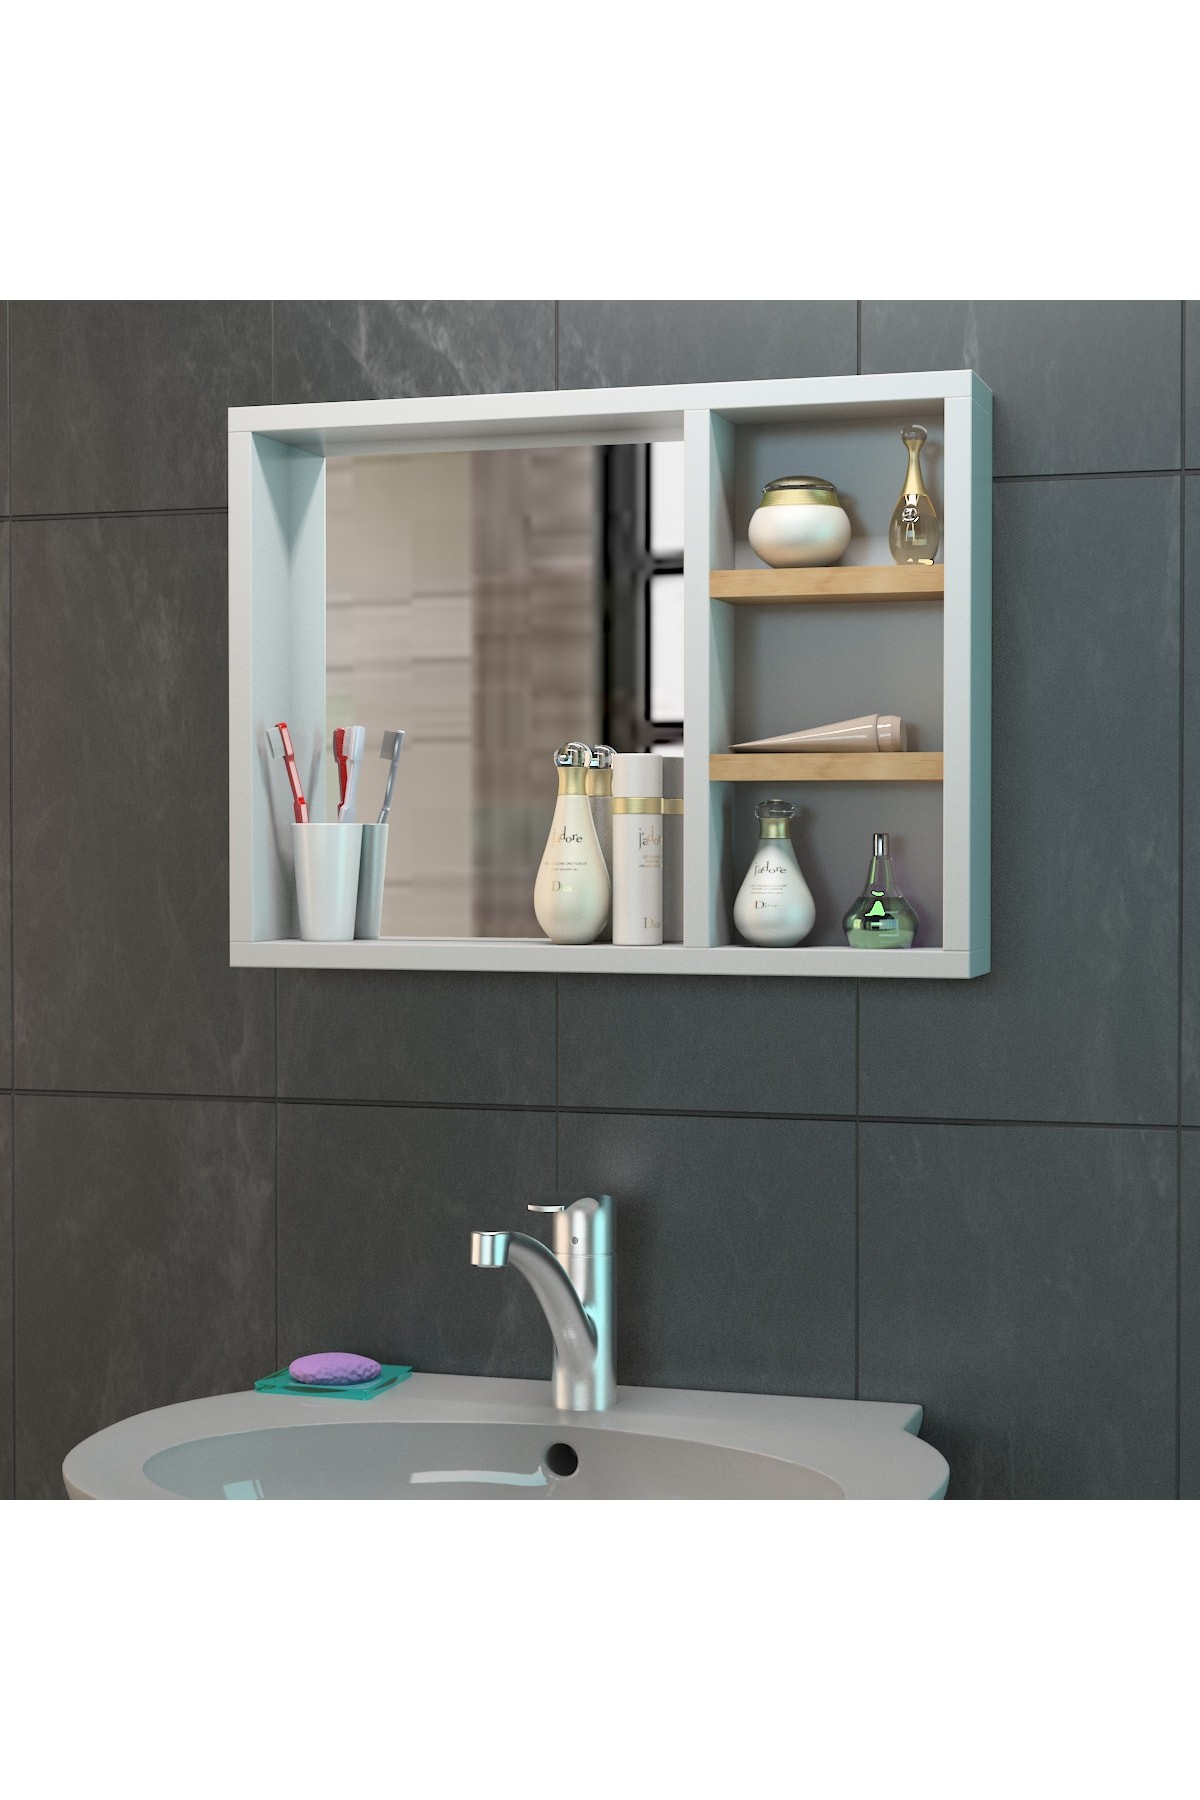 Banyo Aynası/ Lavabo Aynası / Aynalı Banyo Dolabı /flora Riva 45*60 Cm (BEYAZ MEŞE)